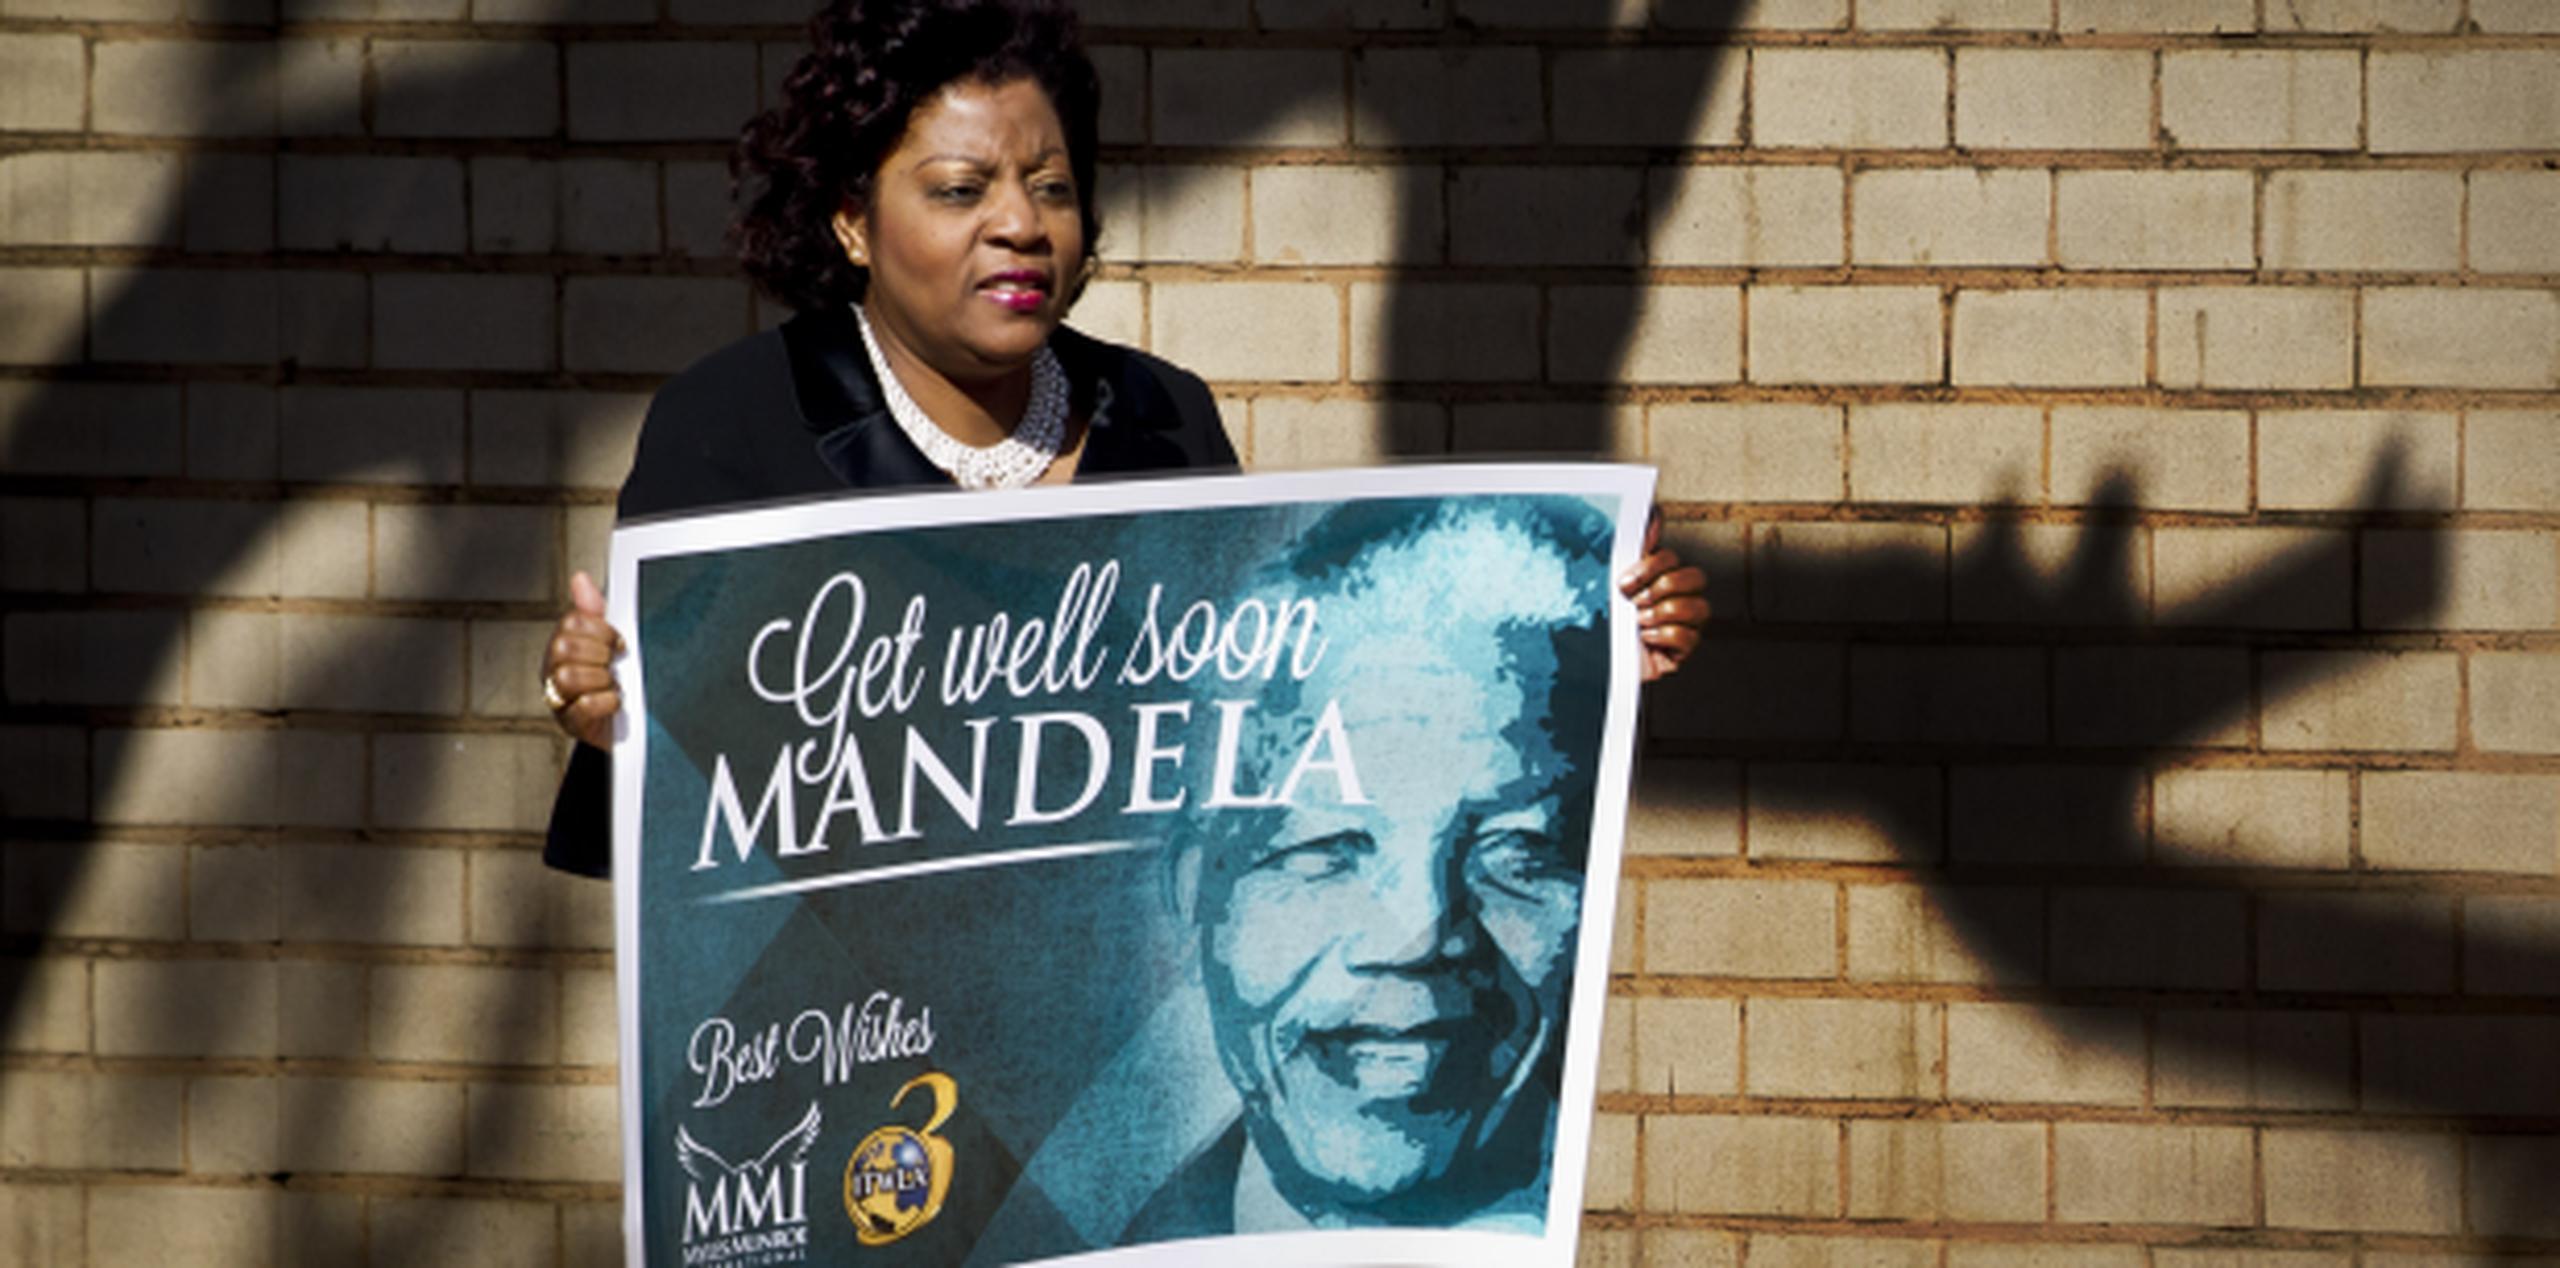 Pese a todas las buenas señales, Madiba -como se conoce popularmente a Mandela en su país- sigue sin salir de la gravedad. (AP/Ben Curtis)